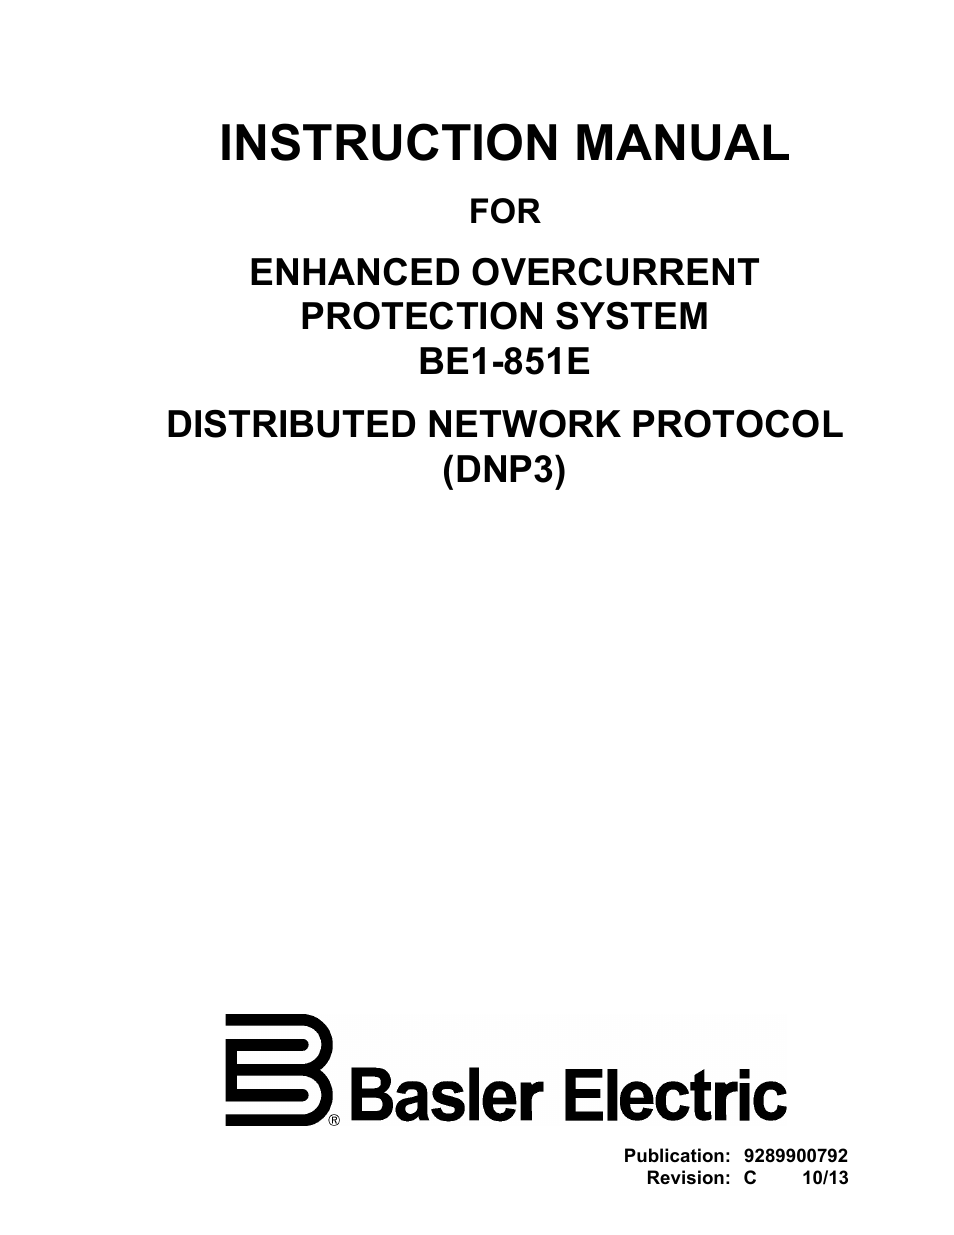 BE1-851E DNP3 Protocol